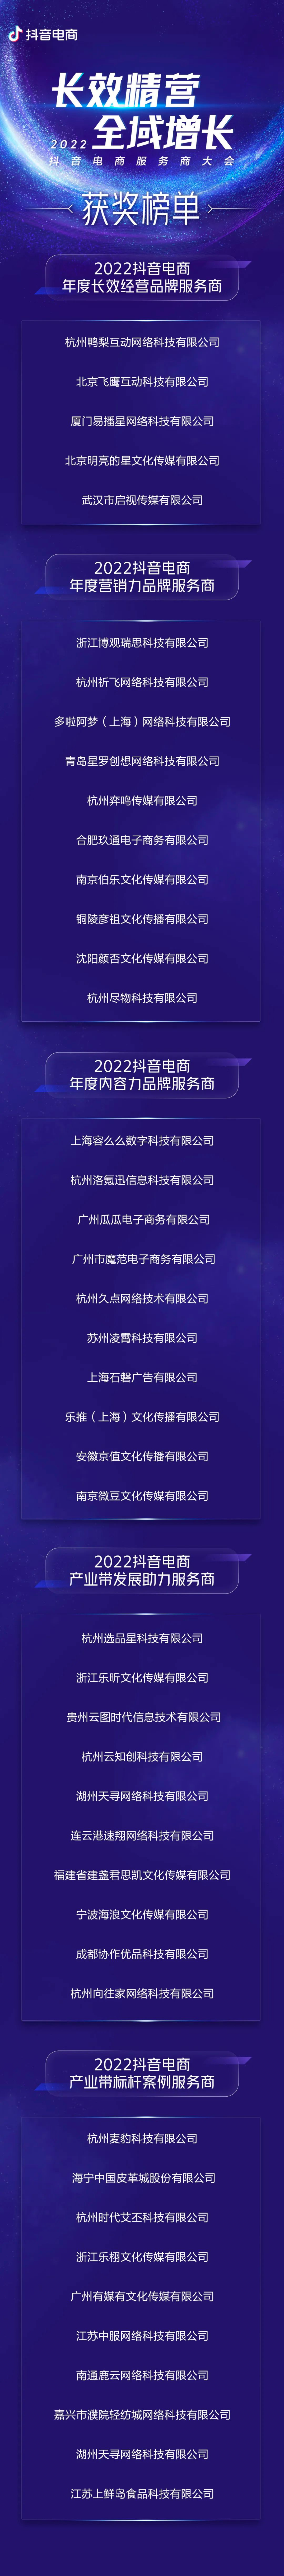 抖音企业代运营需求调查表_抖音短视频兼职代运营_杭州知名抖音代运营公司